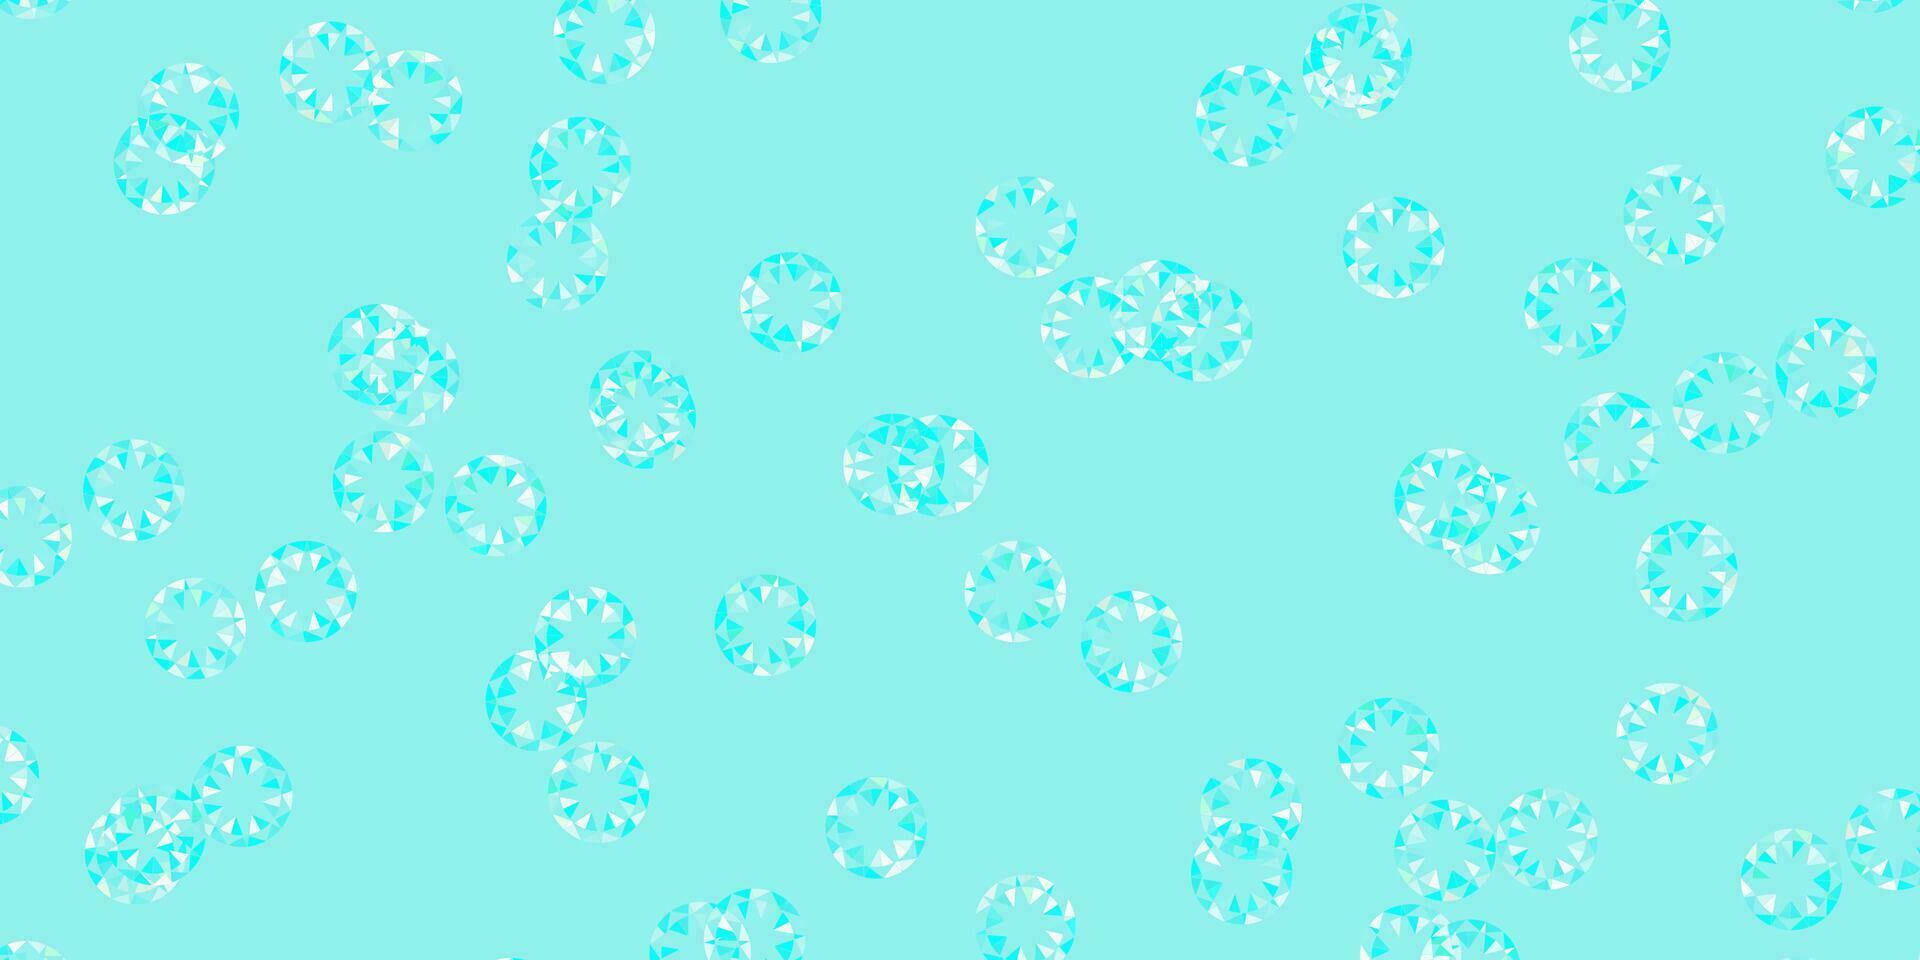 plantilla de vector azul claro, verde con círculos.